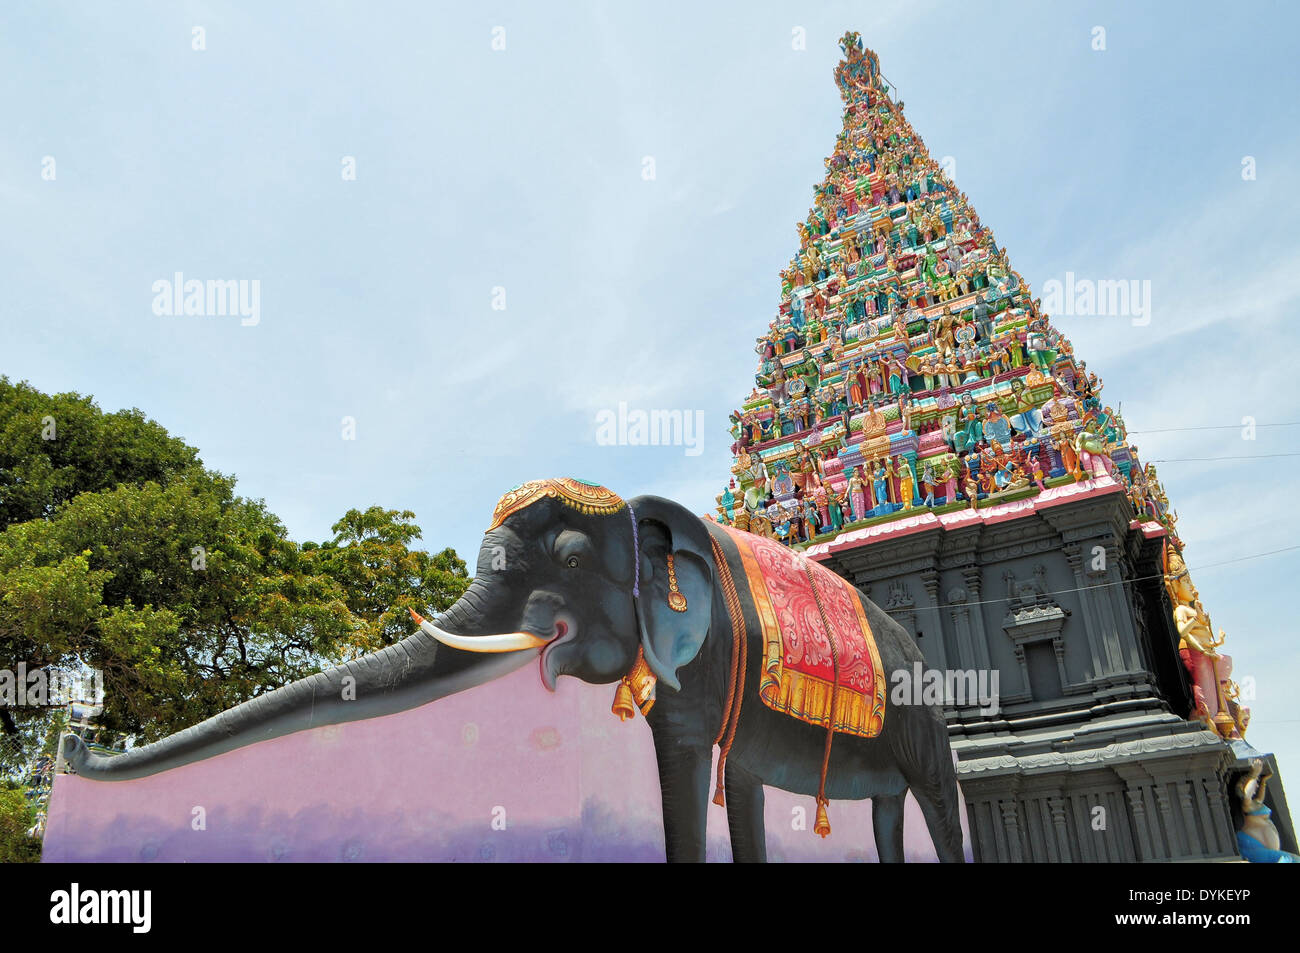 Elephant figure on island Hindu temple, Sri Lanka Stock Photo